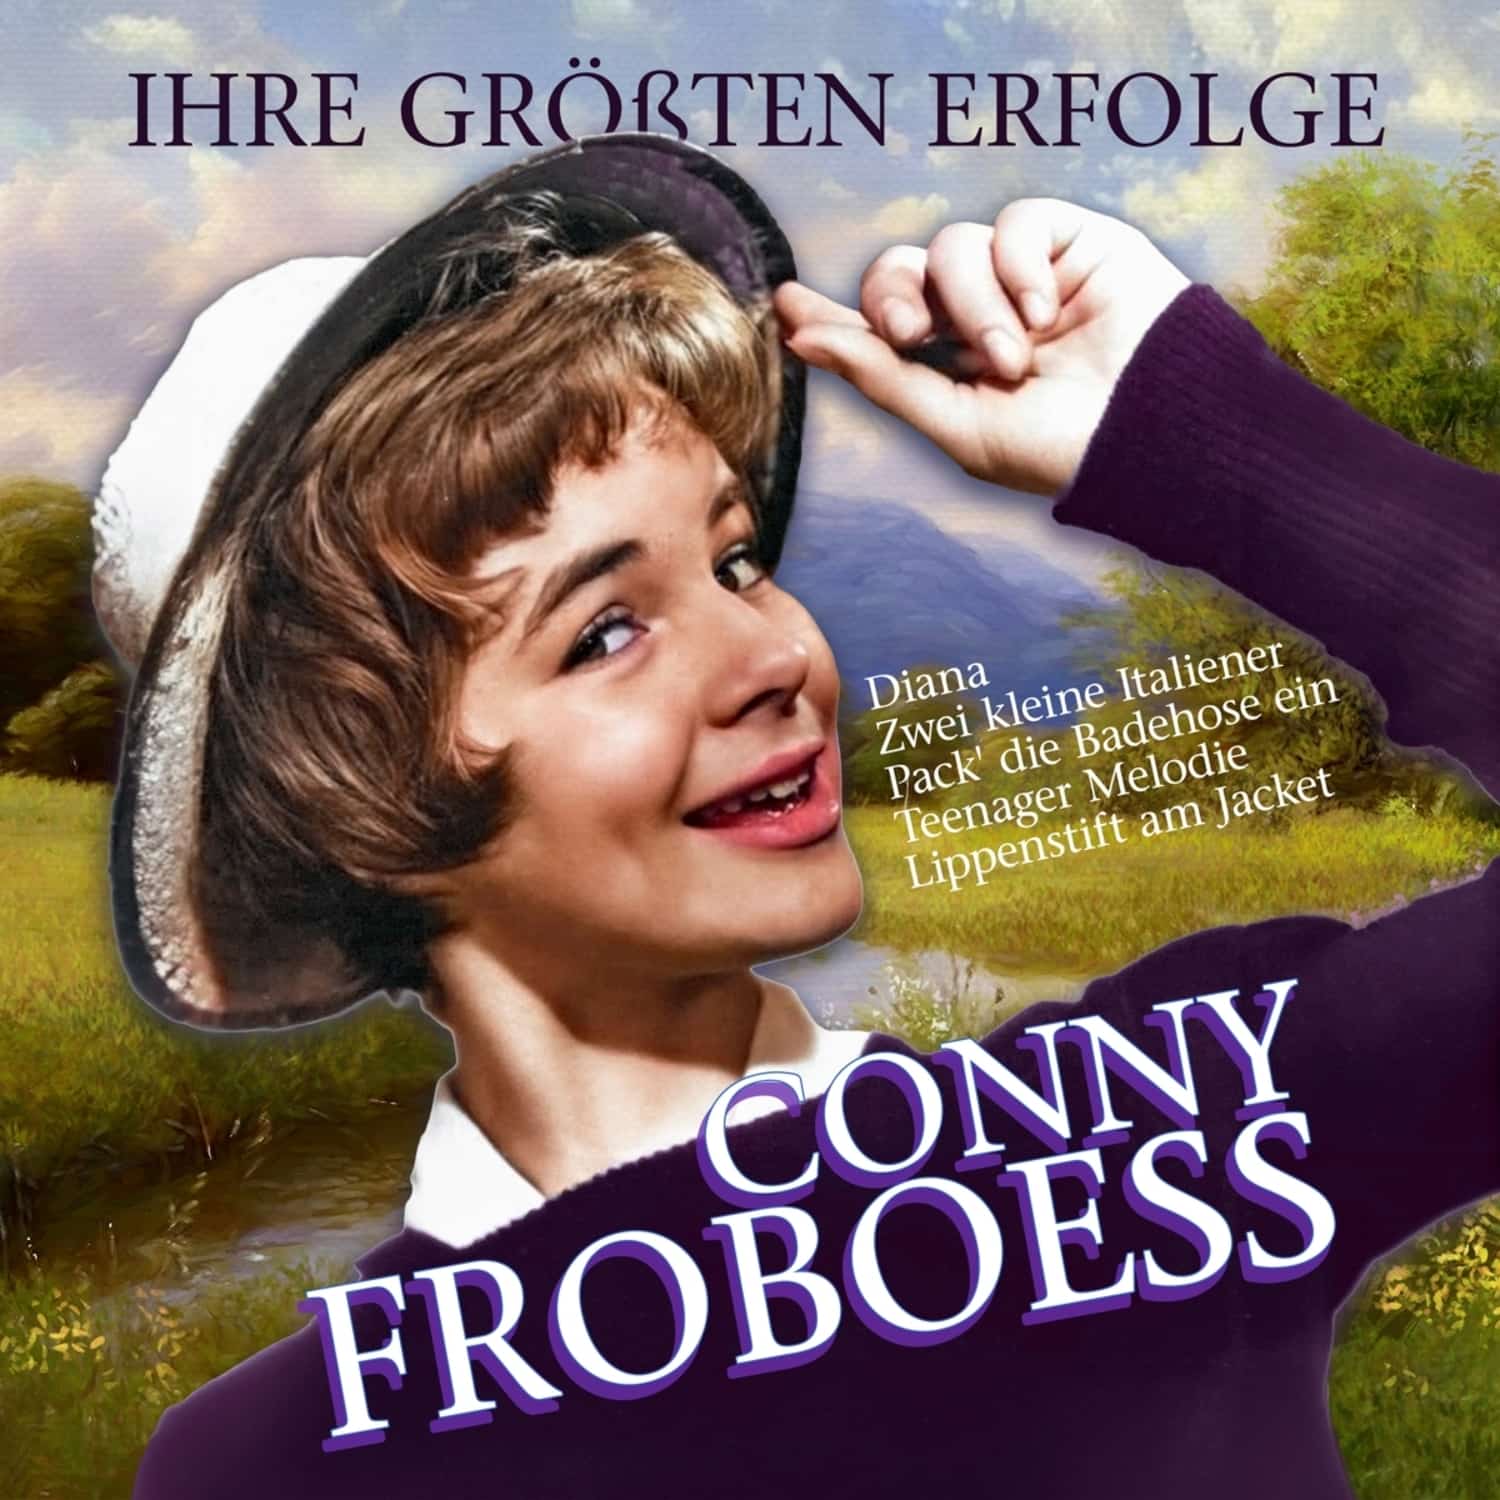 Conny Froboess - IHRE GRSSTEN ERFOLGE 